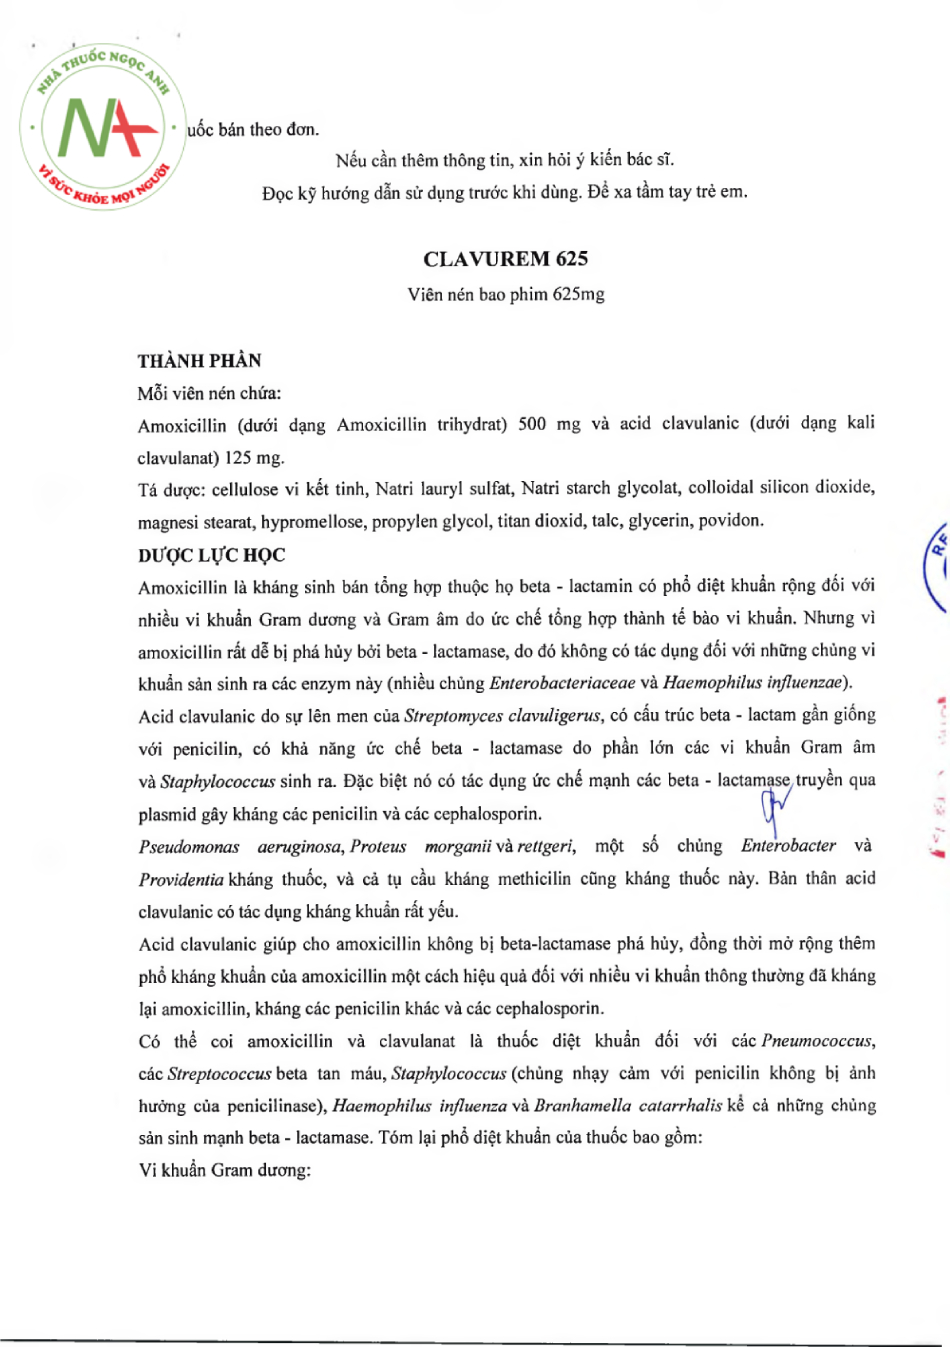 Tờ hướng dẫn sử dụng của thuốc Clavurem 625